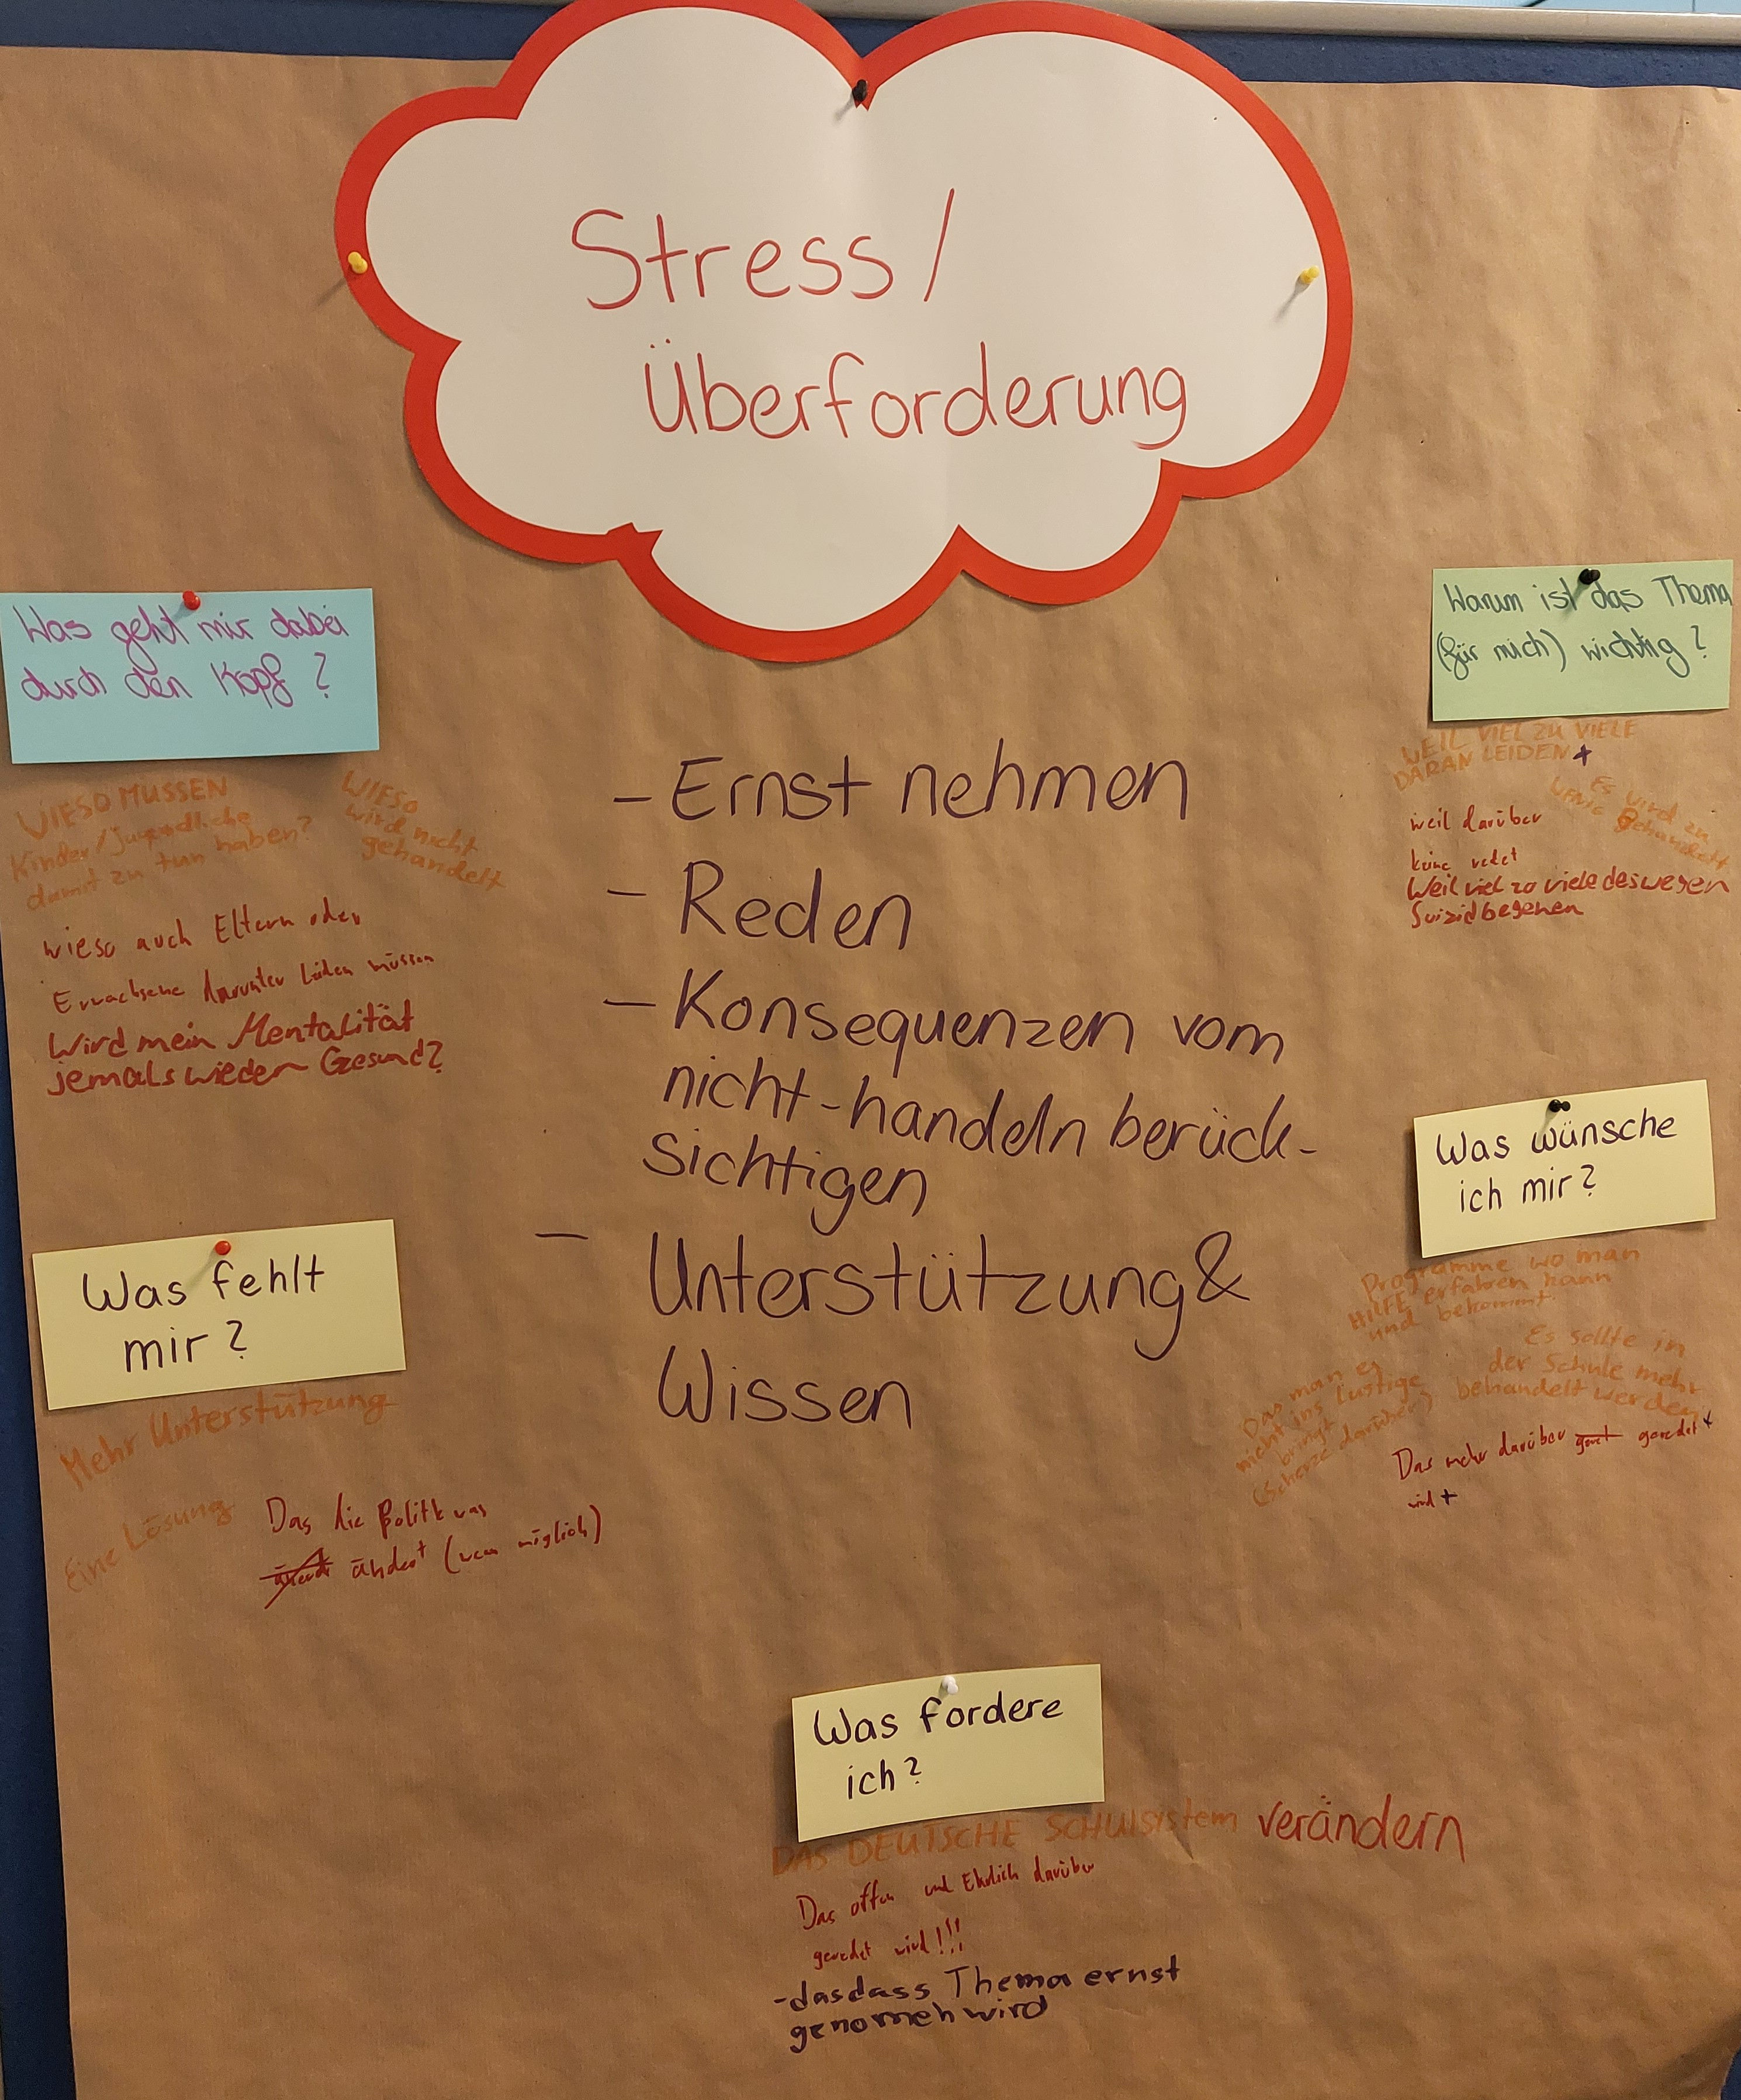 Das Bild zeigt Ergebnisse aus der Jugend-/ Zukunfskonferenz in Berlin. In der Jugendliche zu verschiedenen Themen an Workshops teilgenommen haben.